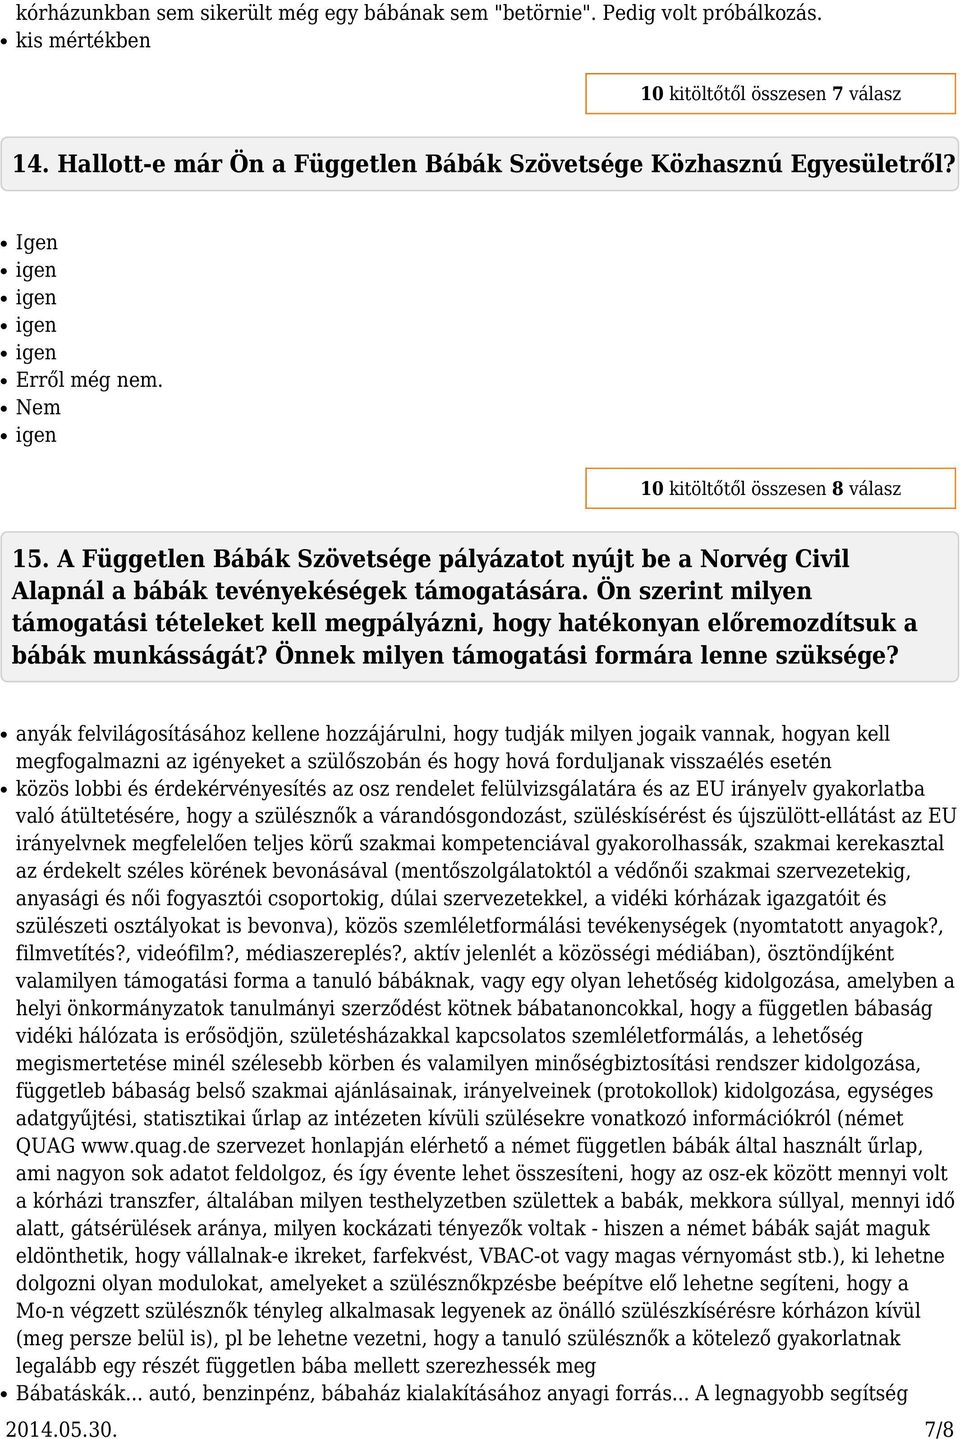 A Független Bábák Szövetsége pályázatot nyújt be a Norvég Civil Alapnál a bábák tevényekéségek támogatására.